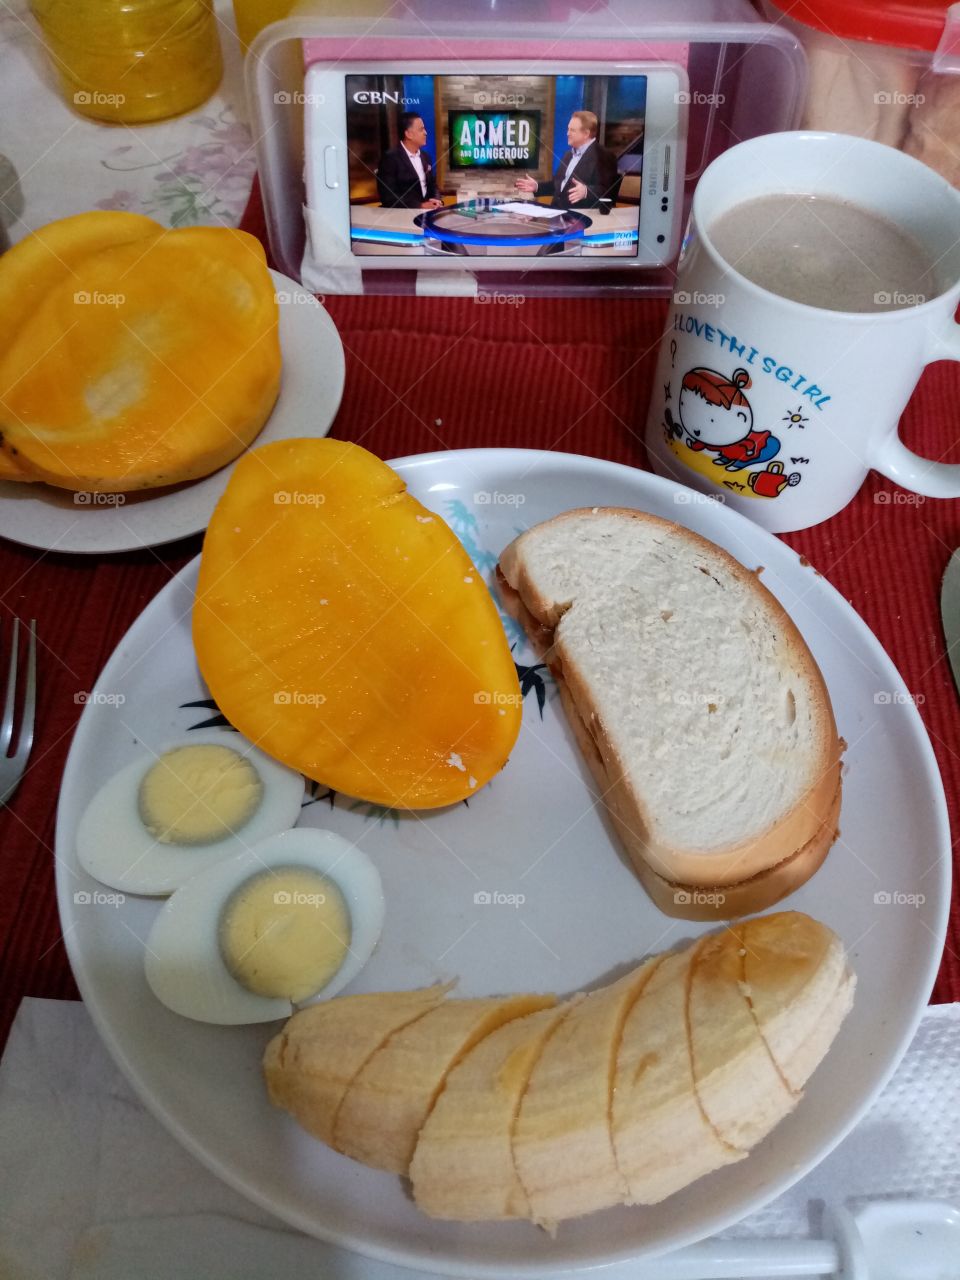 My Healthy breakfast